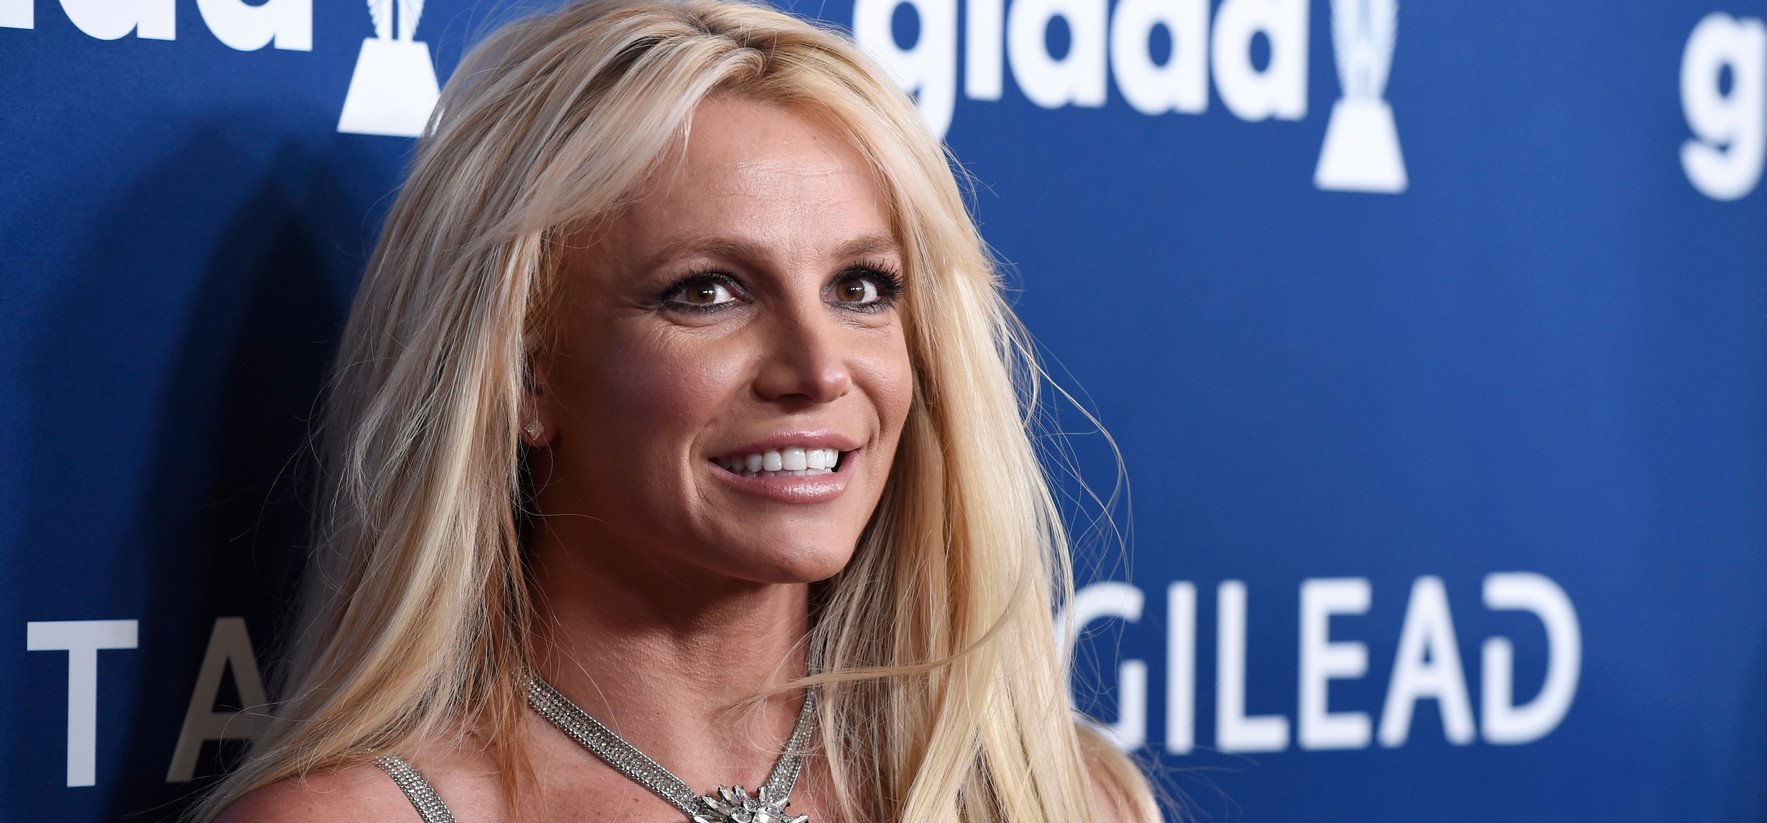 A szexi Britney Spears folyamatosan a rajongóknak tart divatbemutatót – fotók